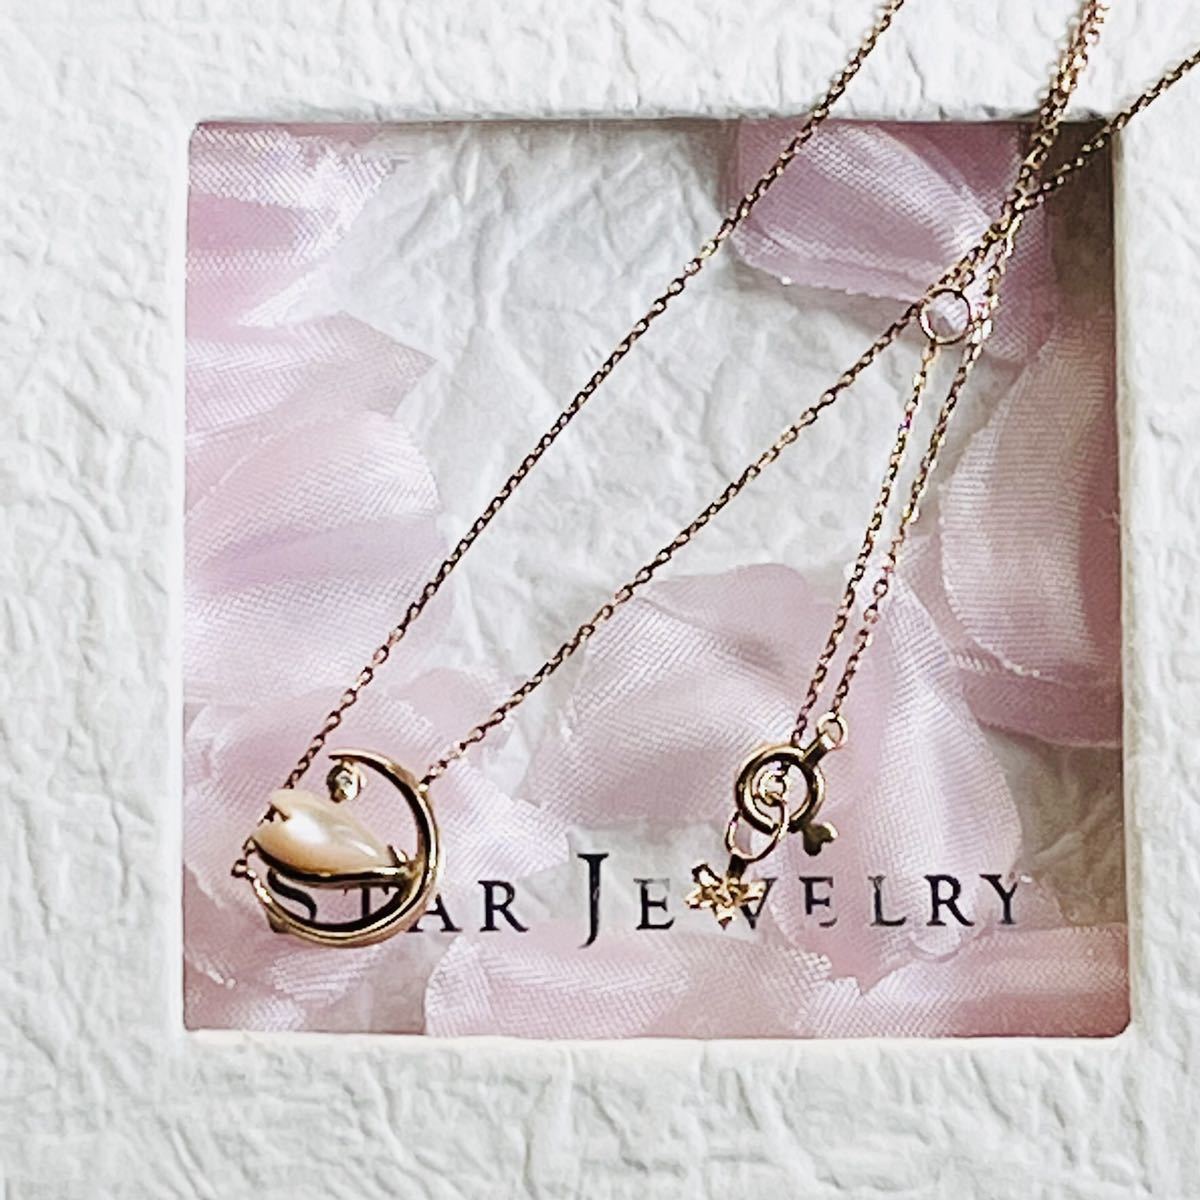  Star Jewelry ночь Sakura SAKURA колье 2019